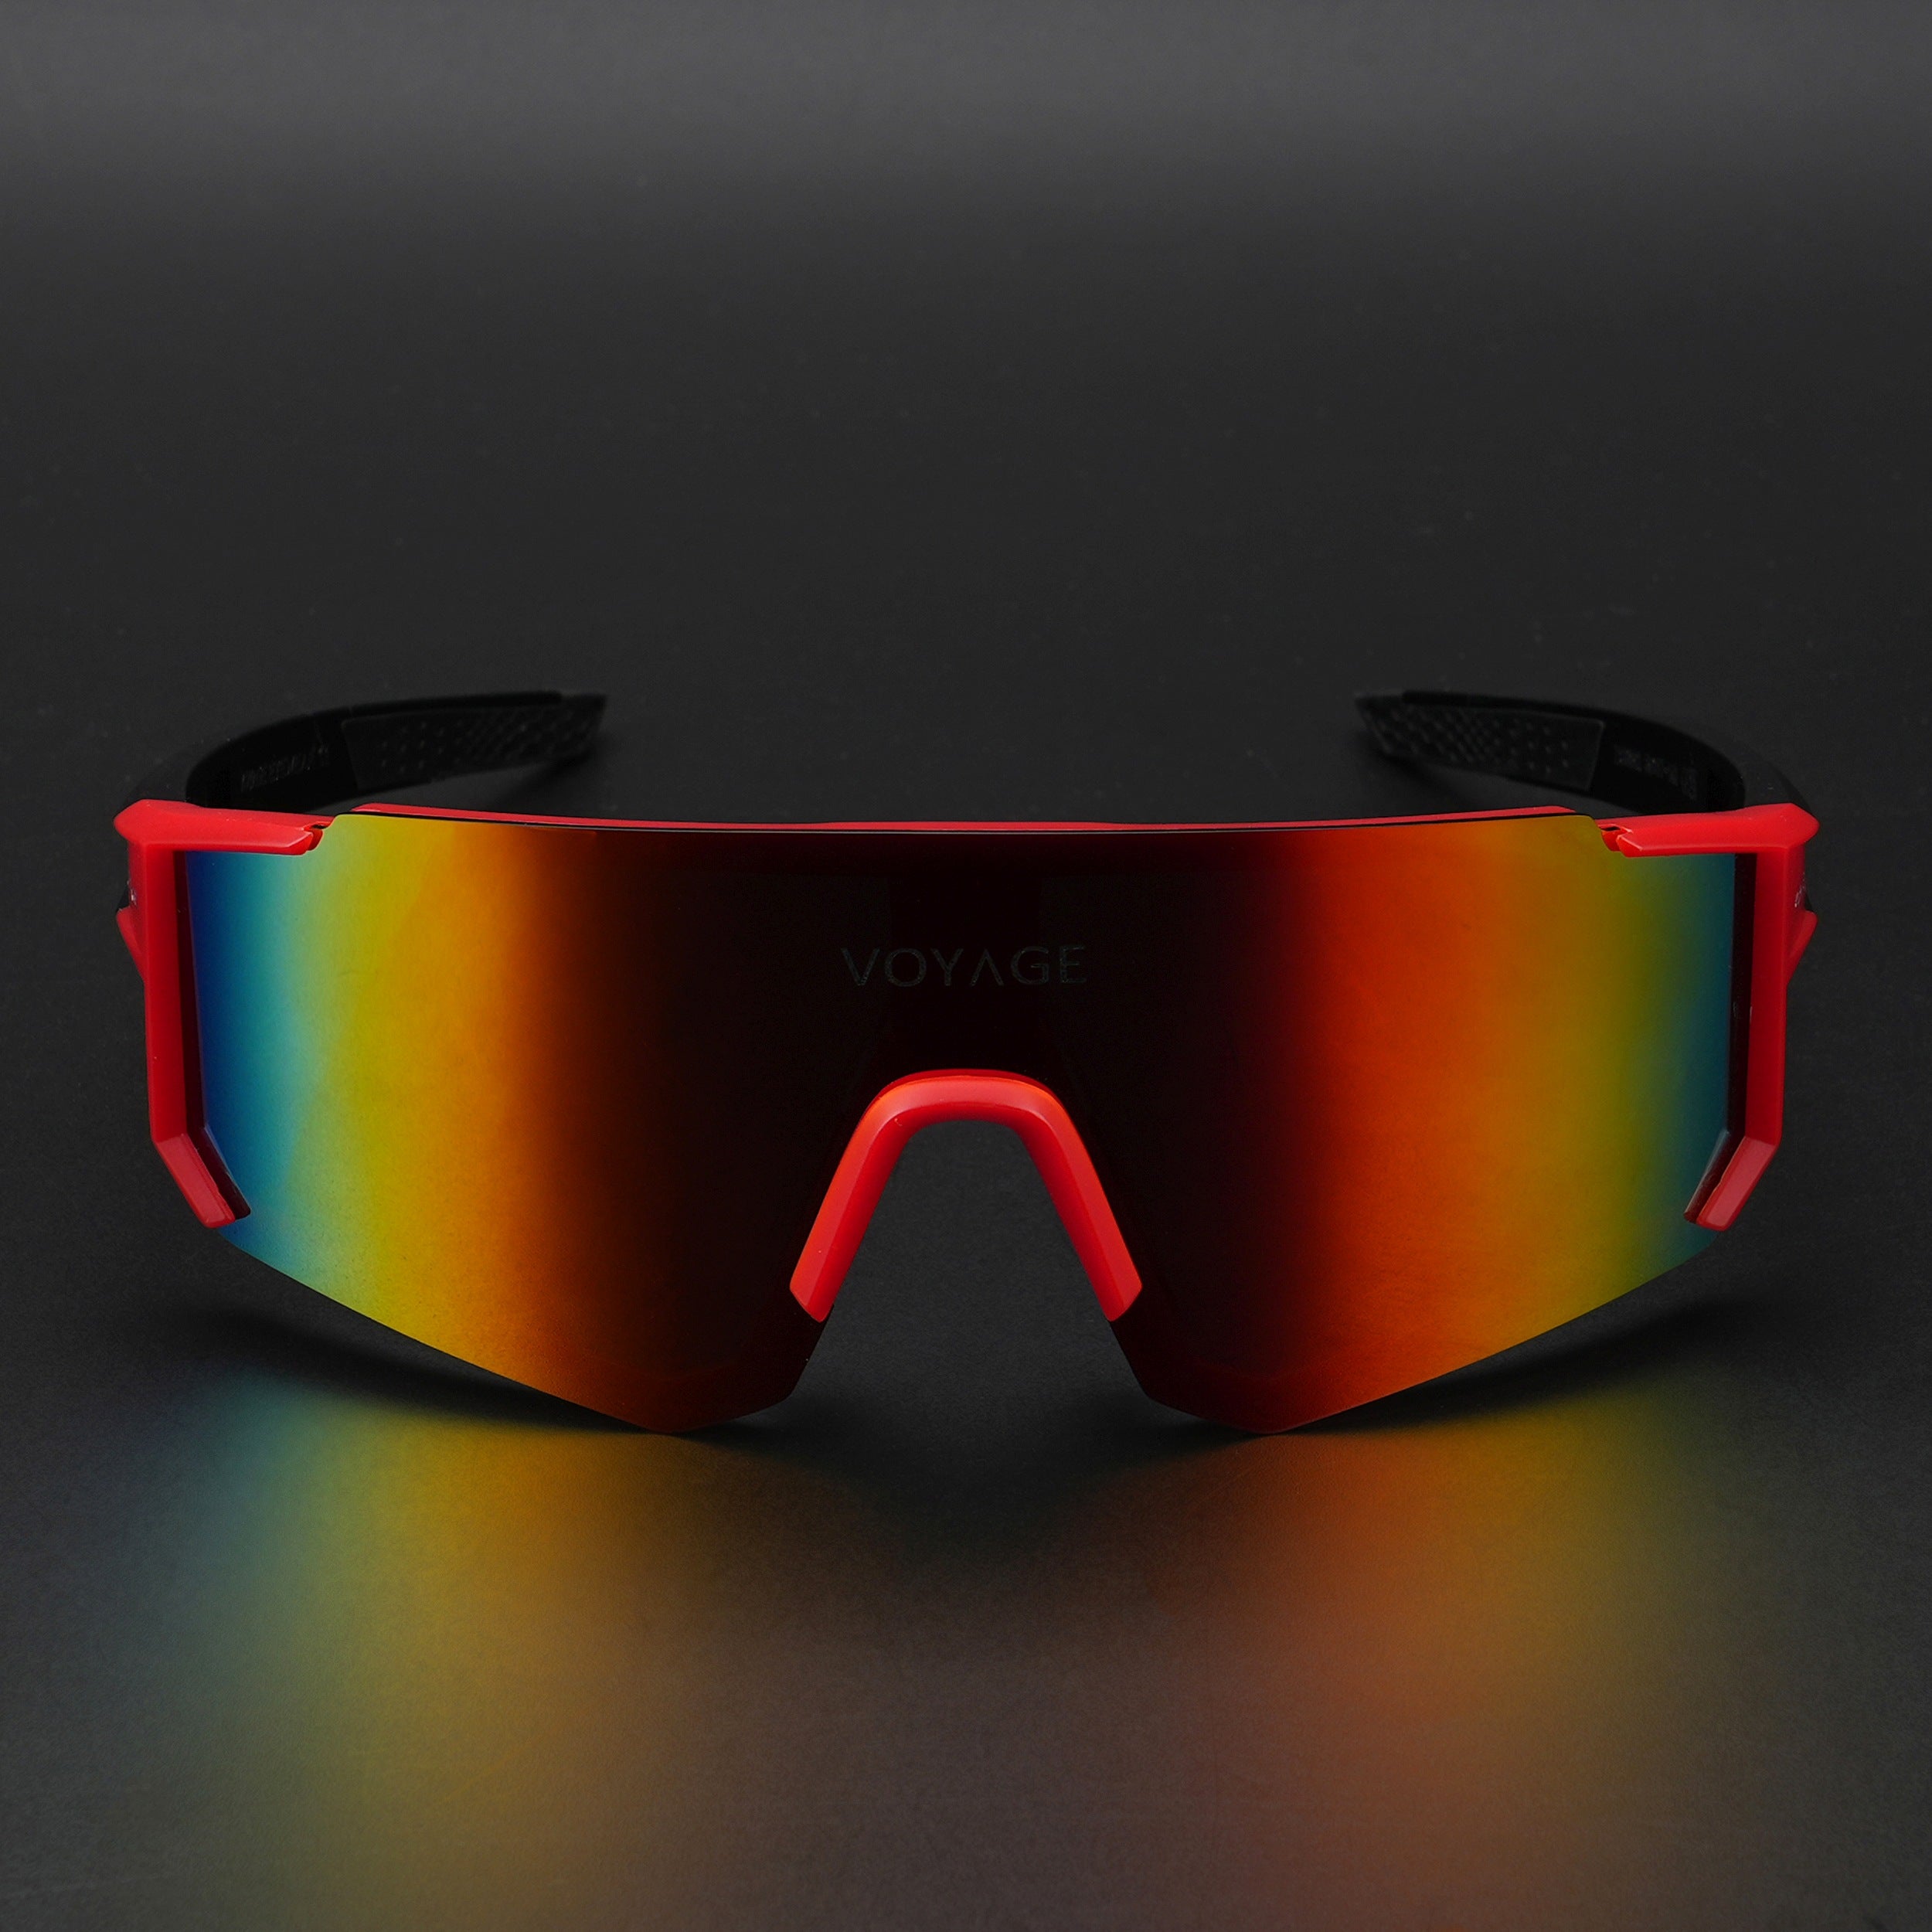 Voyage Drift Polarized Sunglasses for Men & Women (Multicolor Lens | Red Frame - PMG5597)